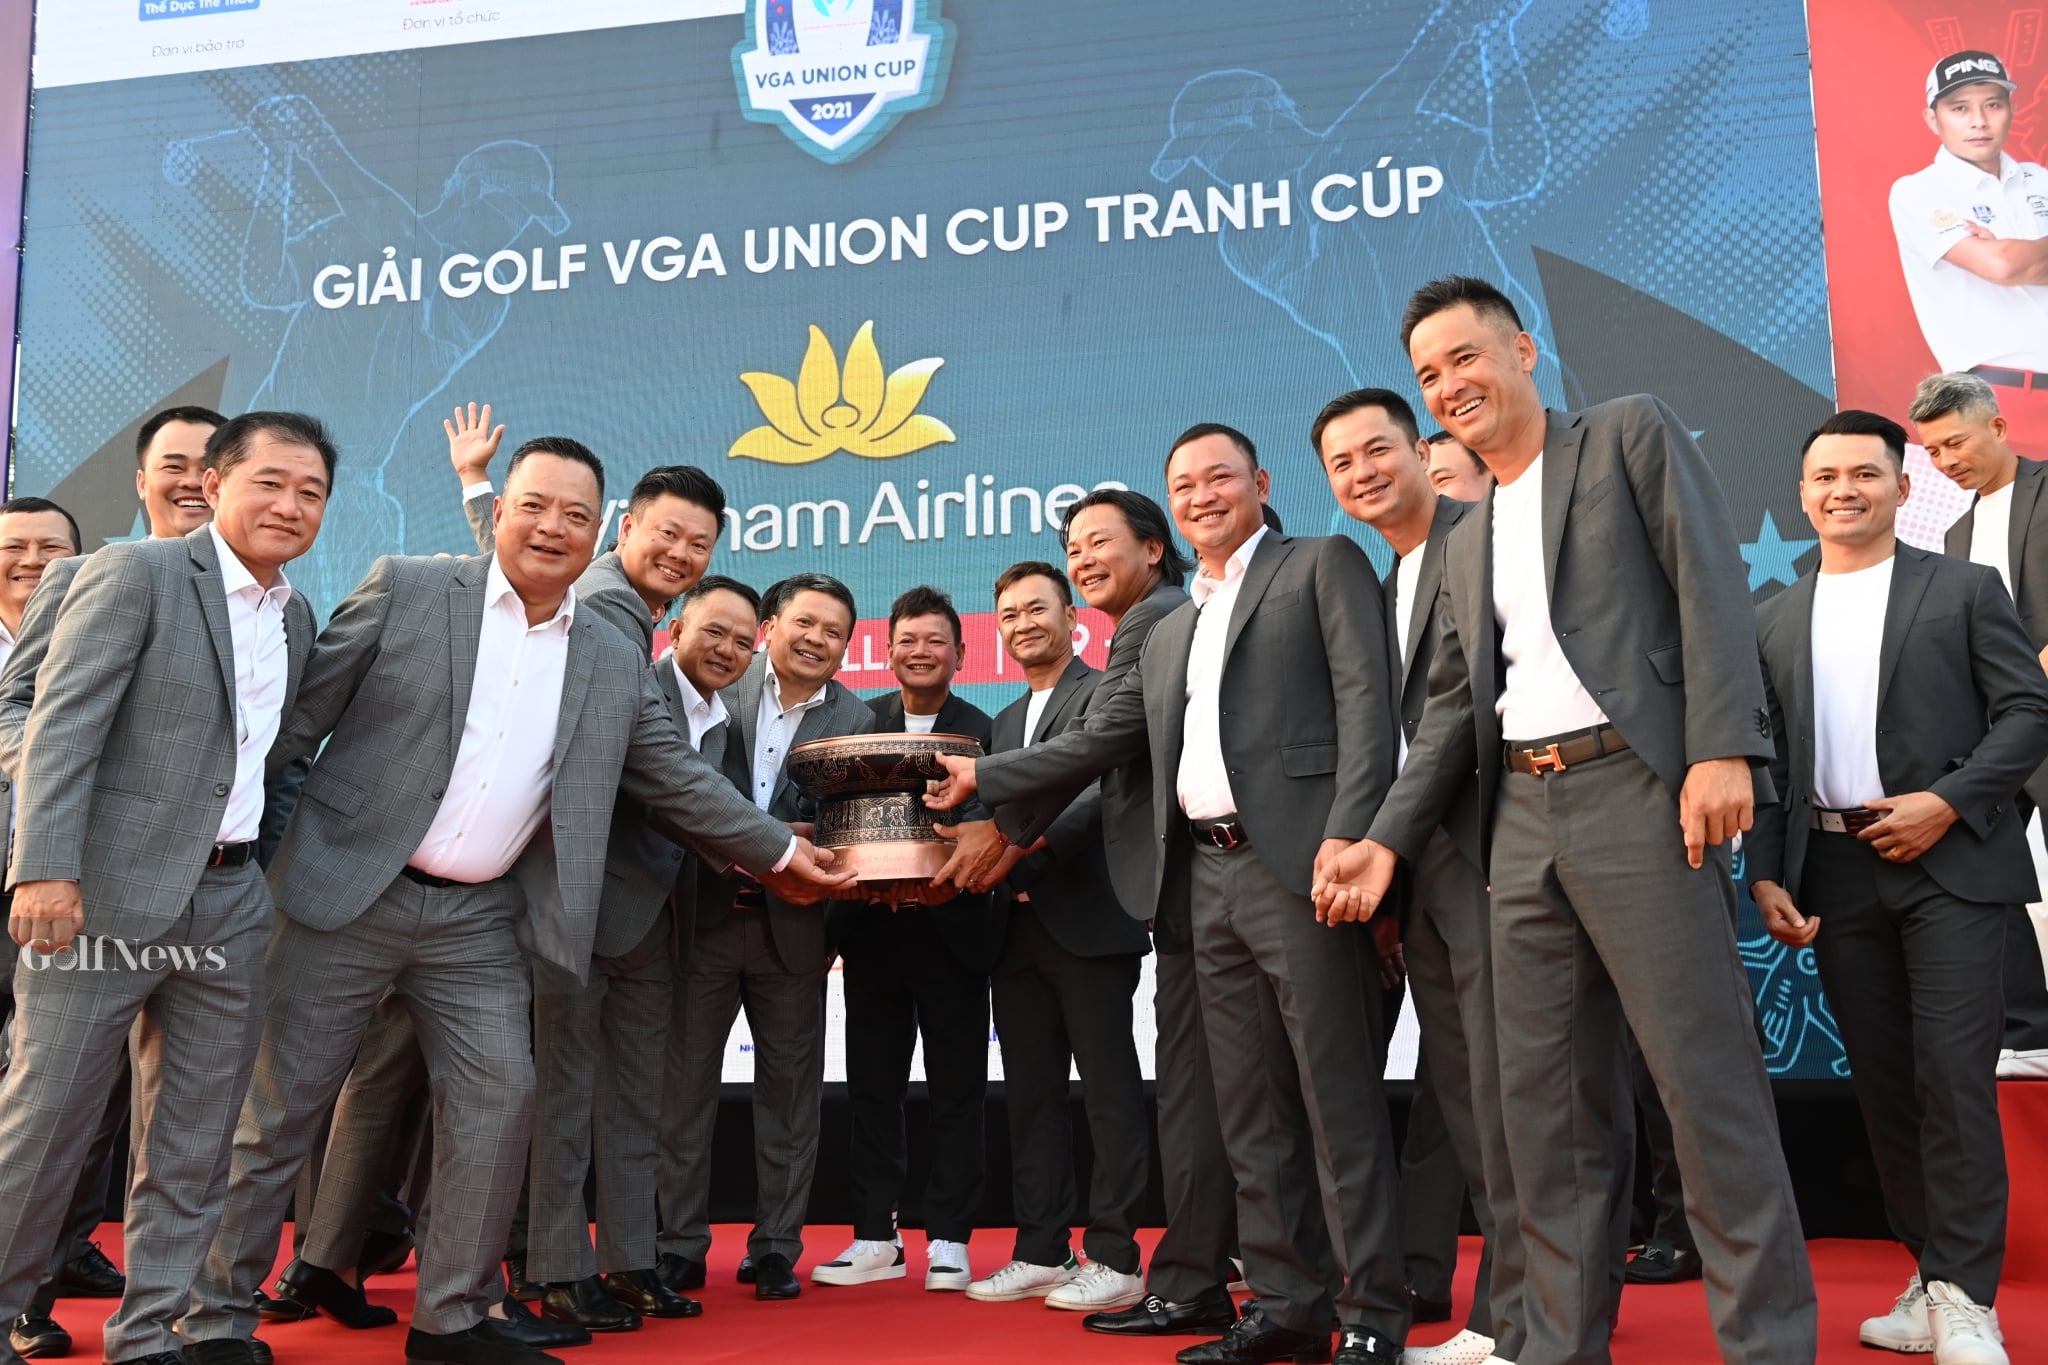 VGA Union Cup: Tuyển miền Nam được trao tặng món quà đầy ý nghĩa